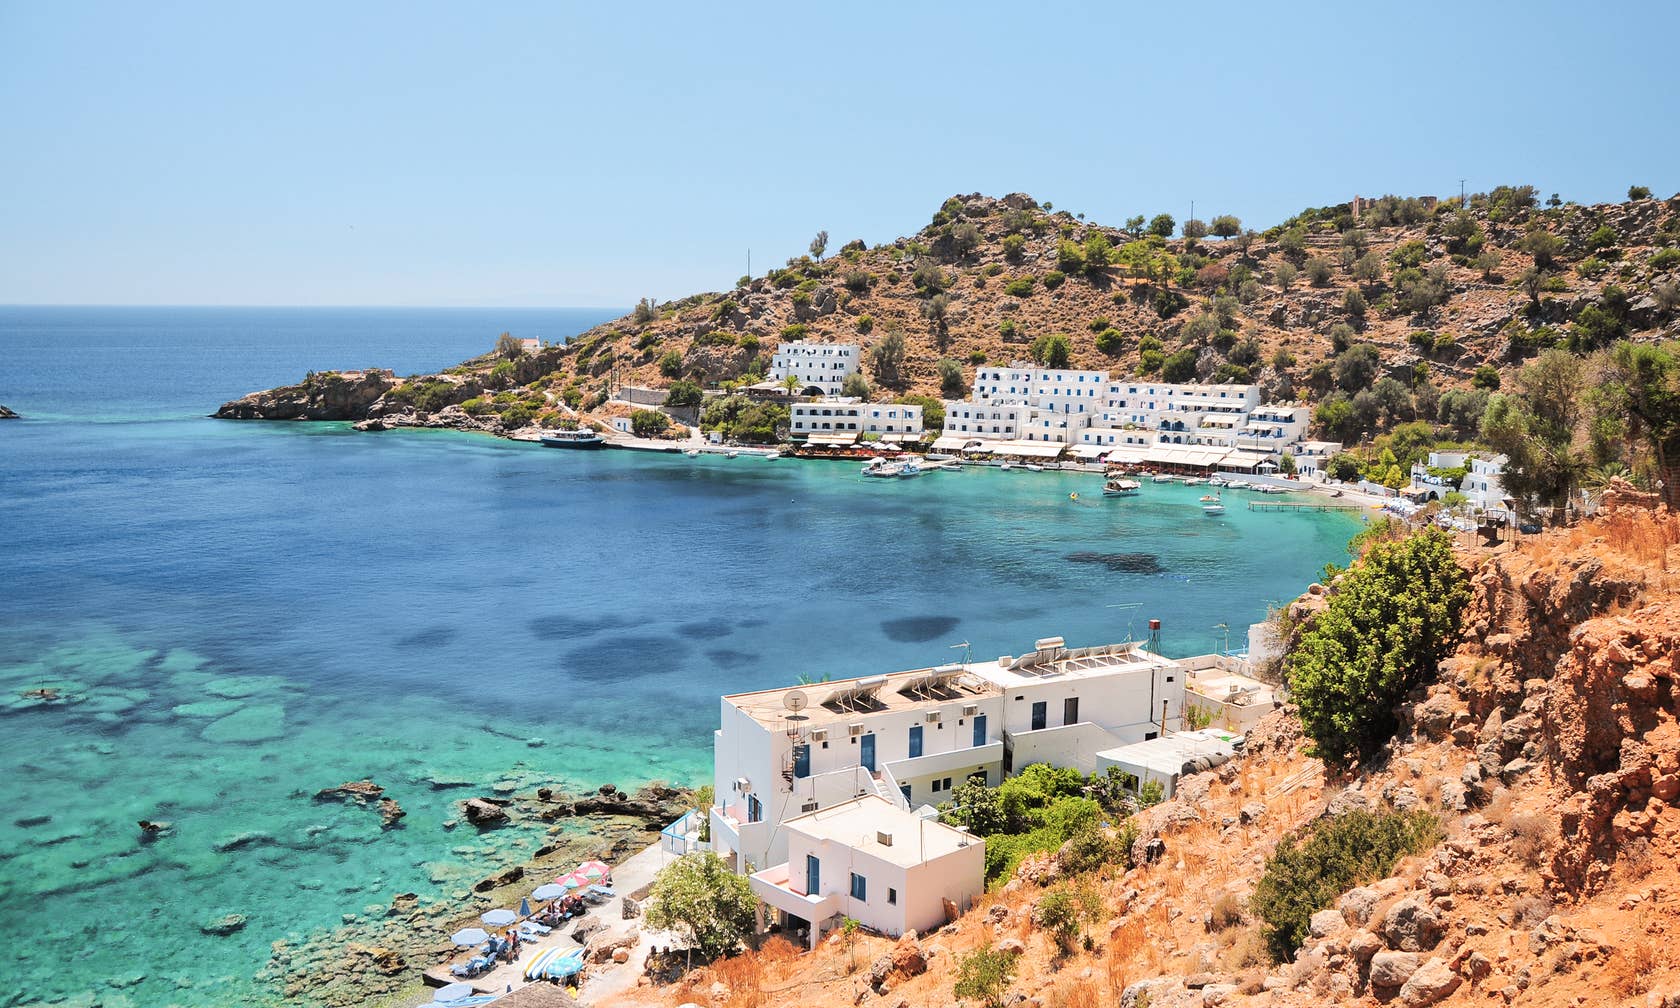 Affitti per le vacanze a Creta